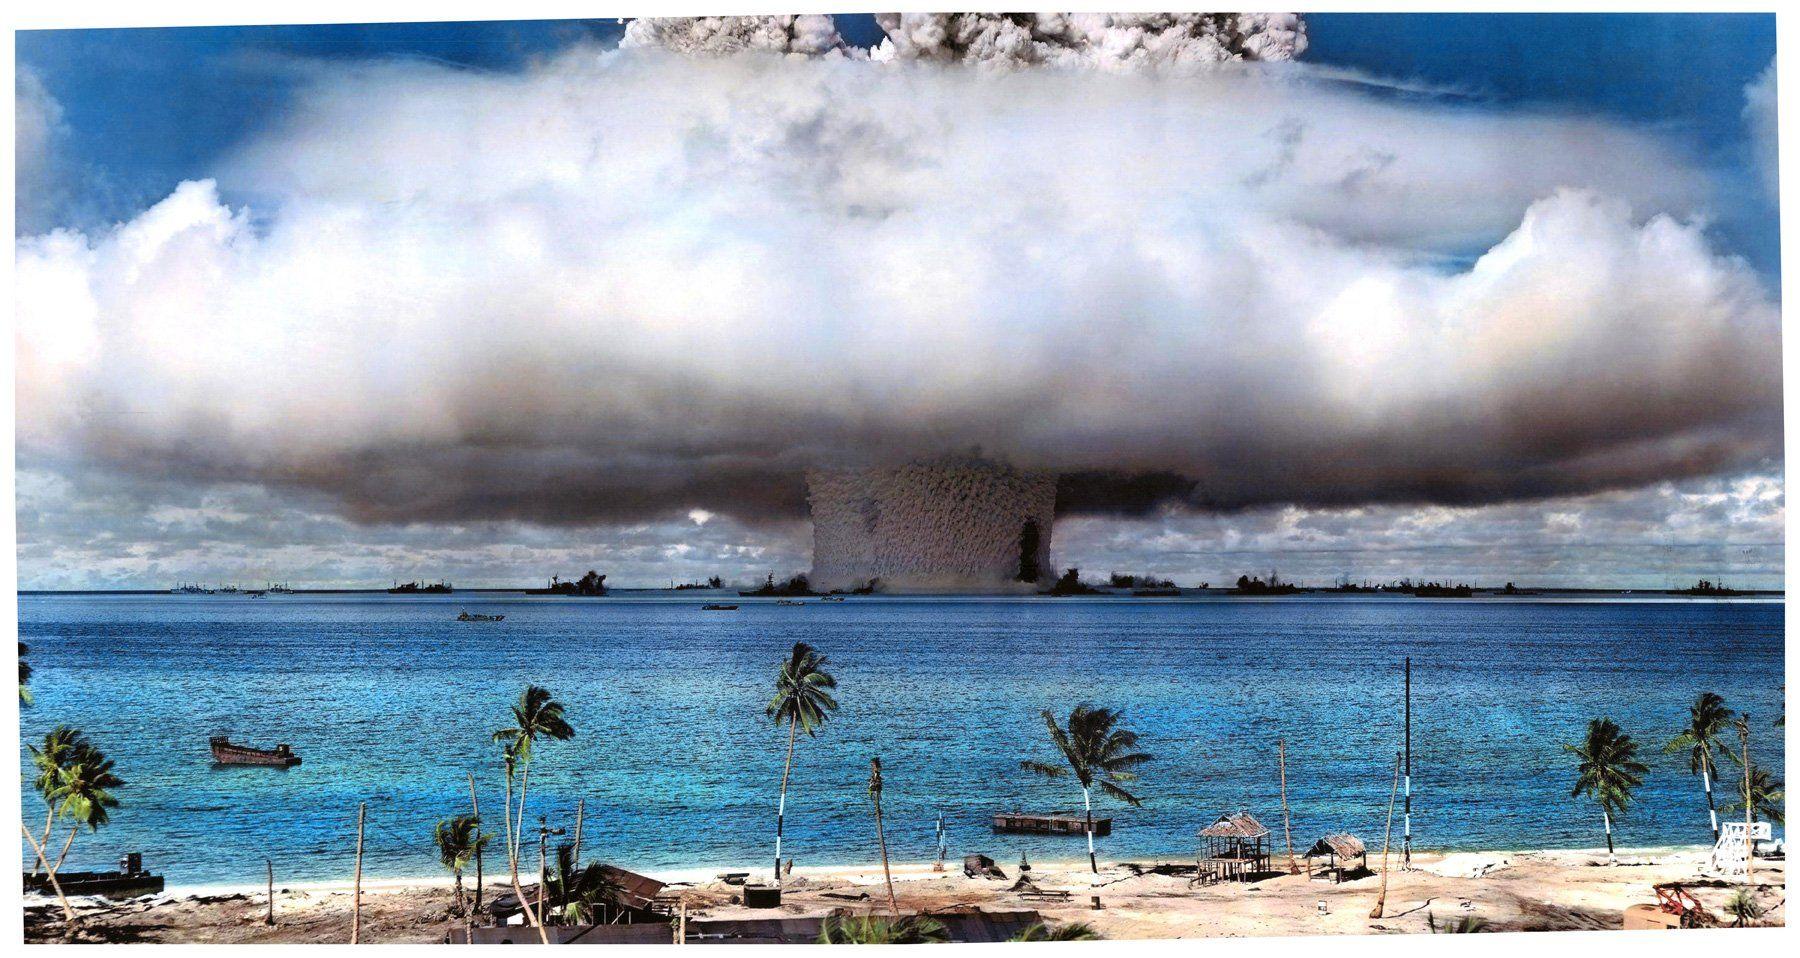 Bikini nuclear test